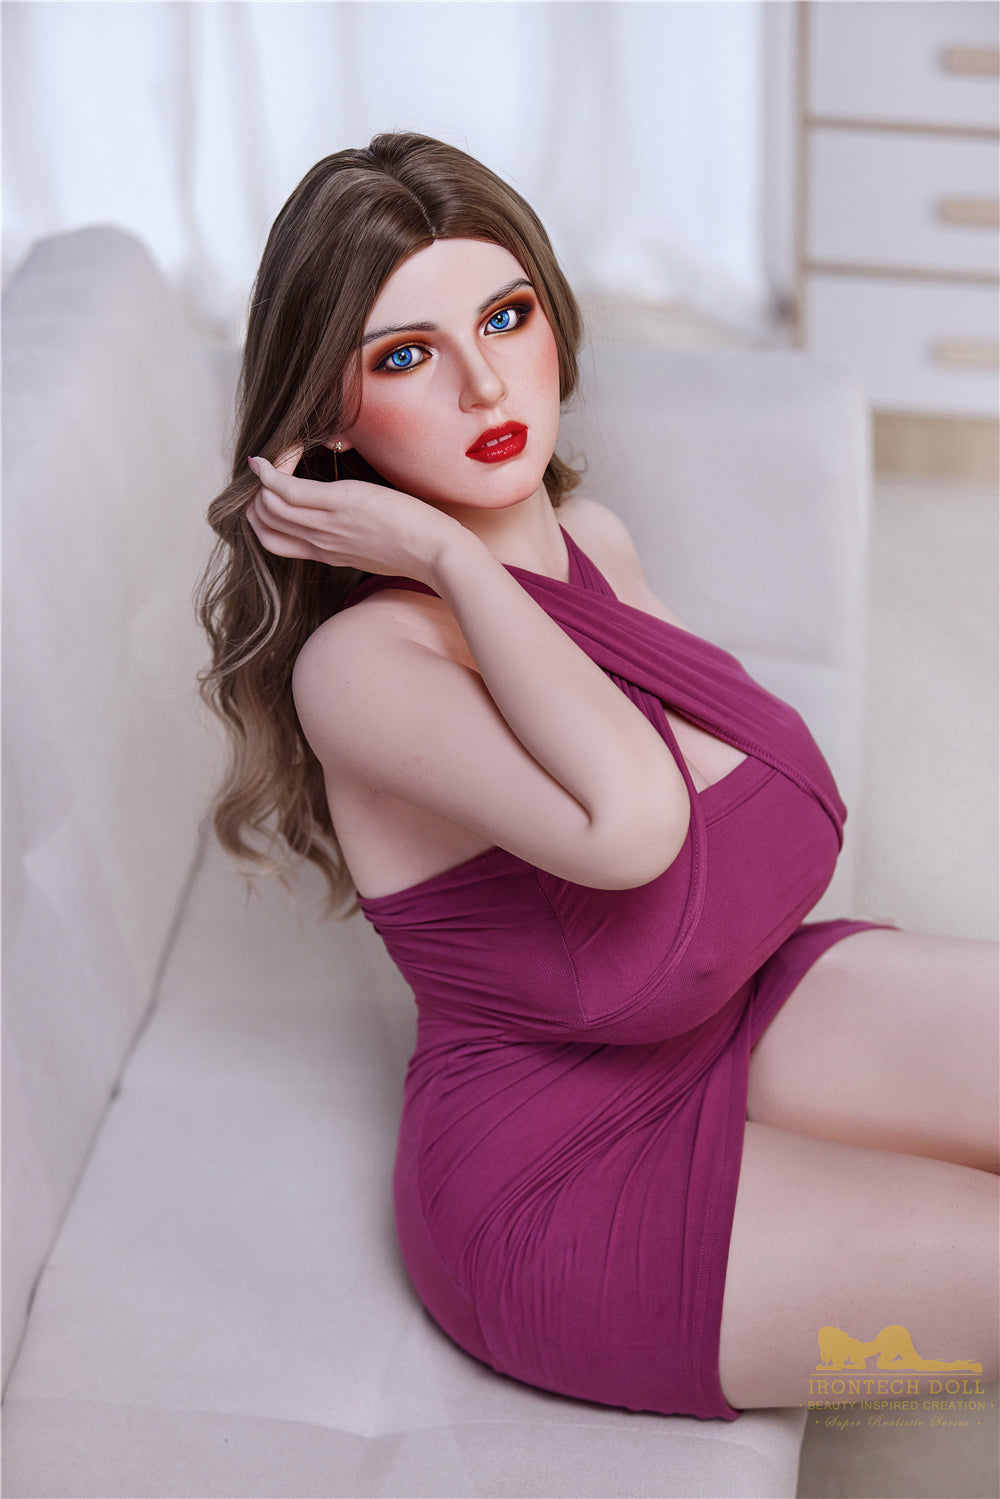 Irontech Doll 162 cm Silicone - Fenny | Sex Dolls SG